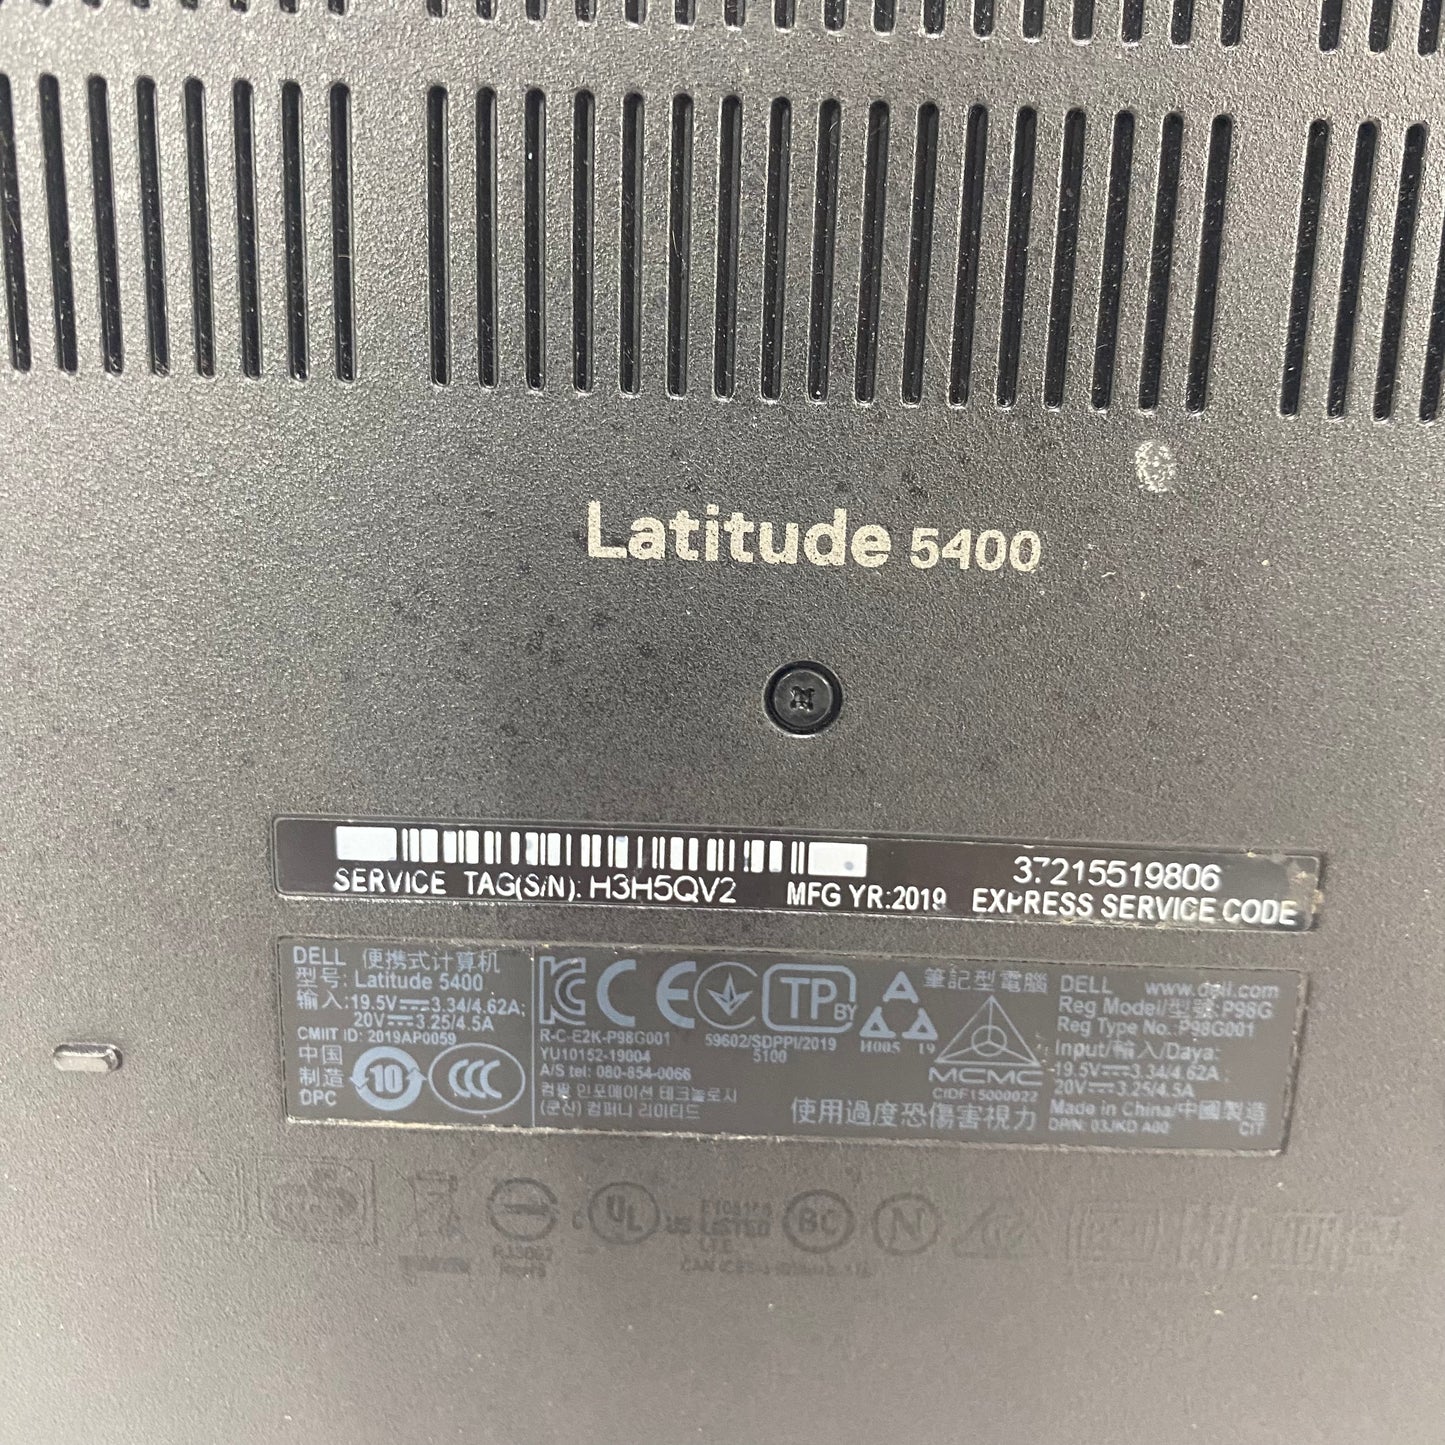 Dell Latitude 5400 14" i5-8265U 1.6GHz 8GB RAM 500GB HDD